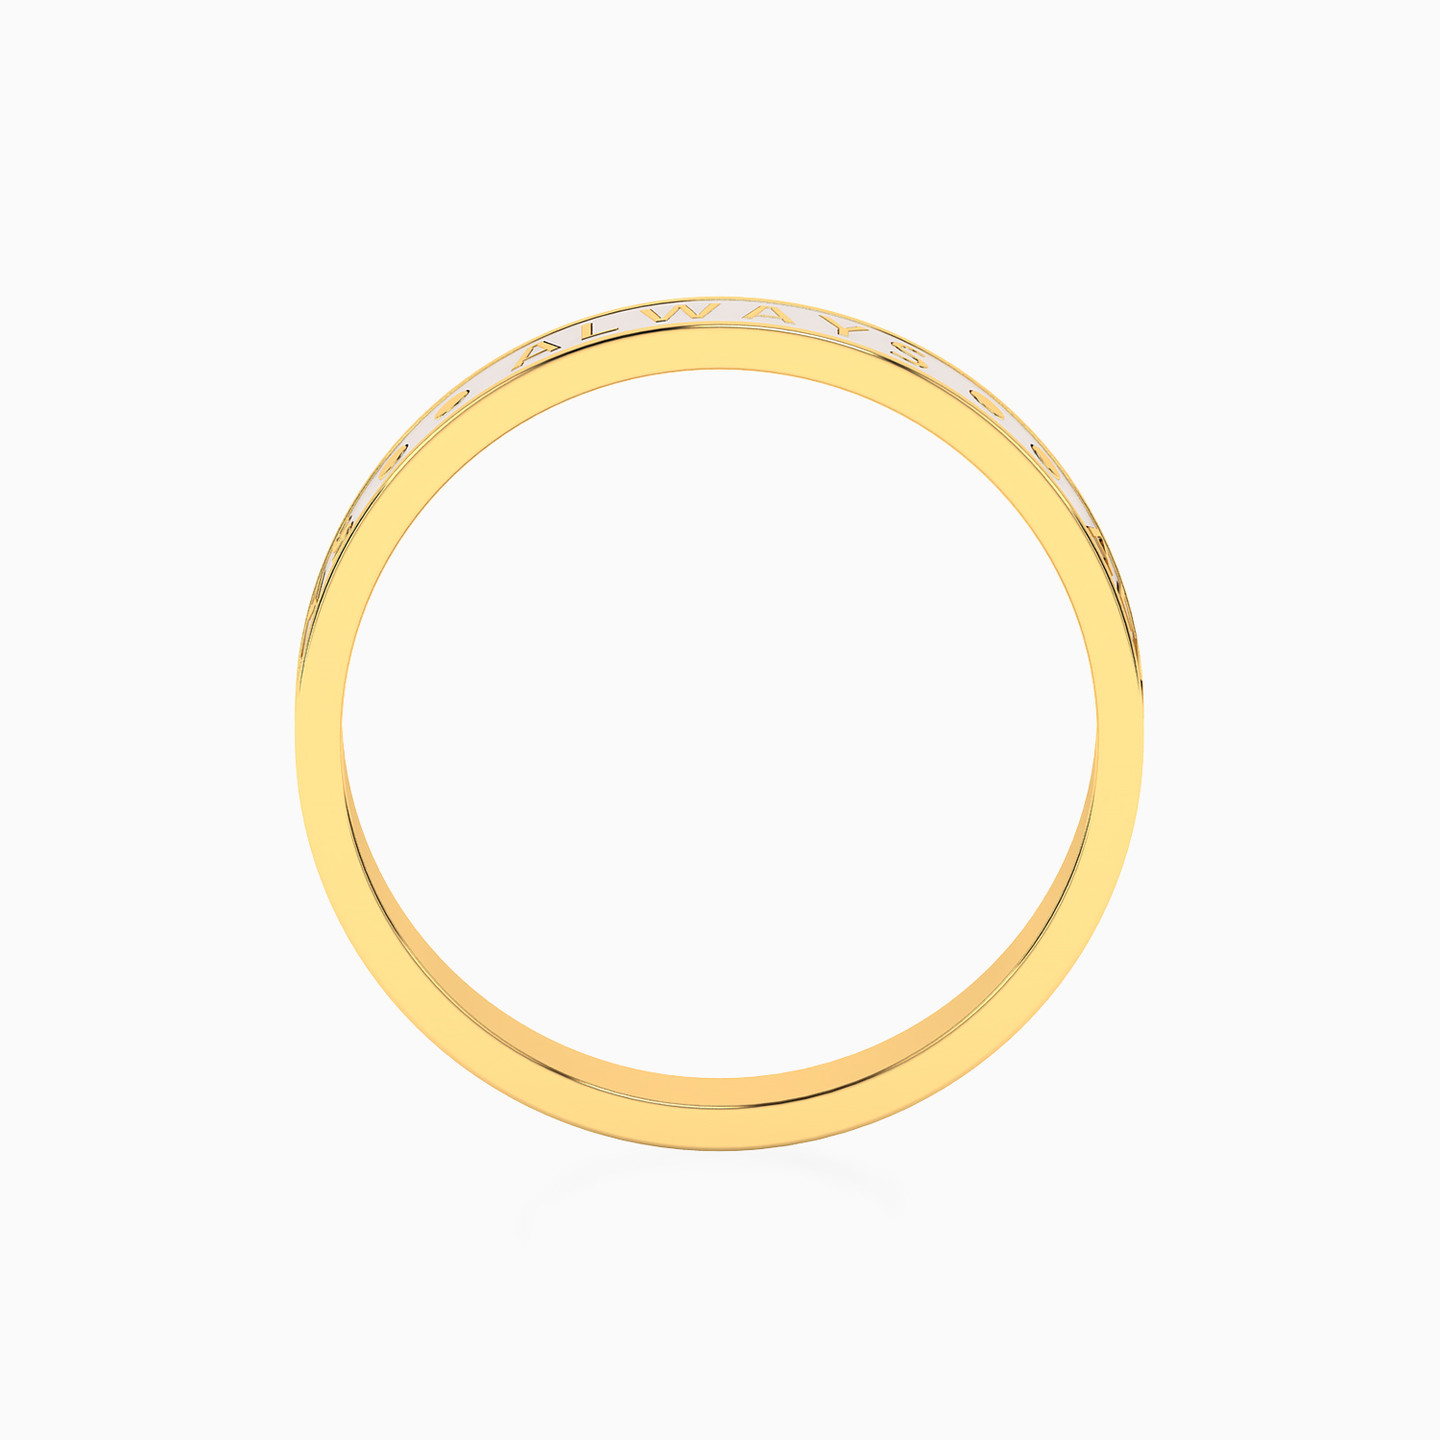 18K Gold Enamel Coated Band Ring - 3